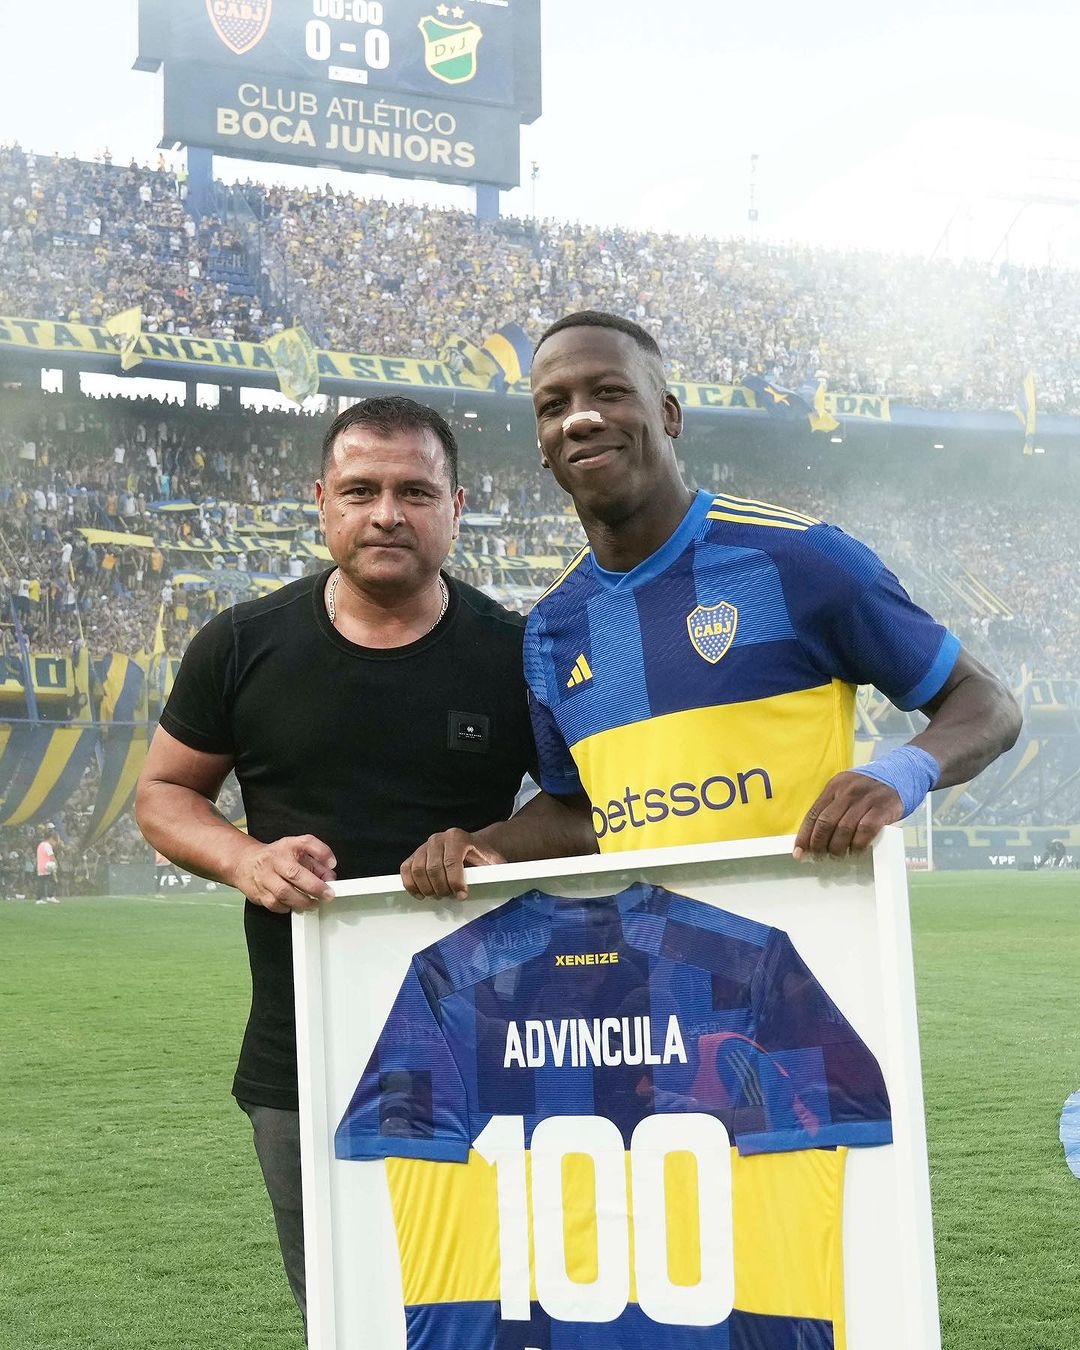 Luis Advíncula, defensa de Boca Juniors. | Foto: Boca.